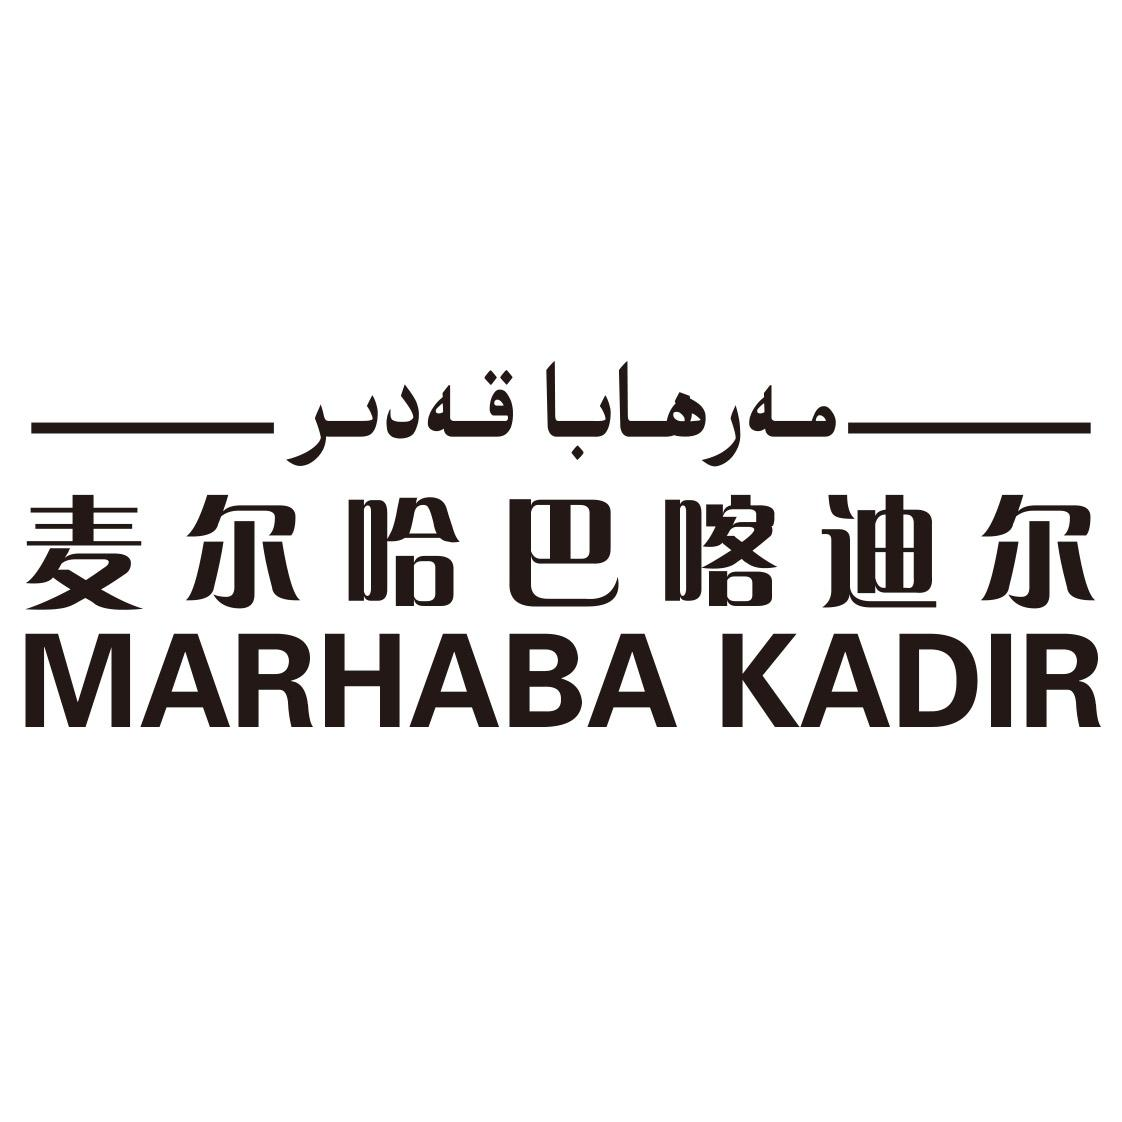 商标文字麦尔哈巴喀迪尔 marhabakadir商标注册号 47063983,商标申请